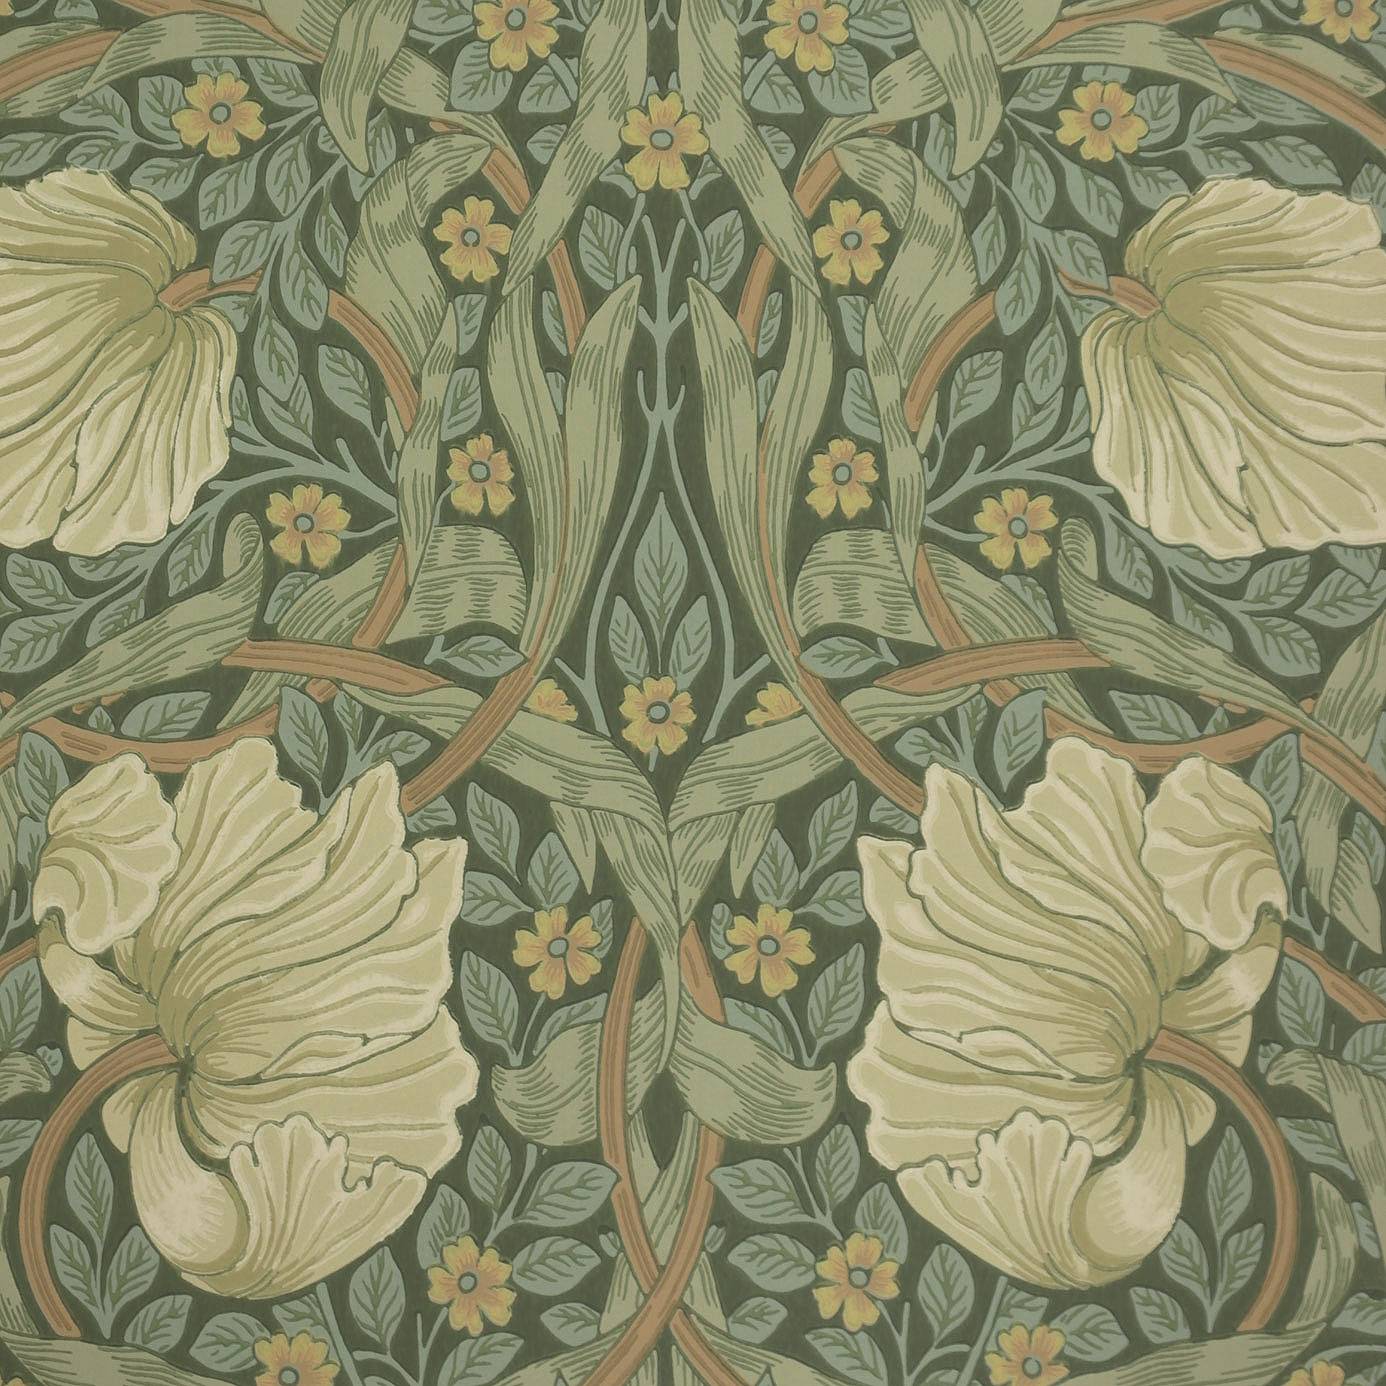 william morris wallpaper,wallpaper,leaf,pattern,botany,floral design